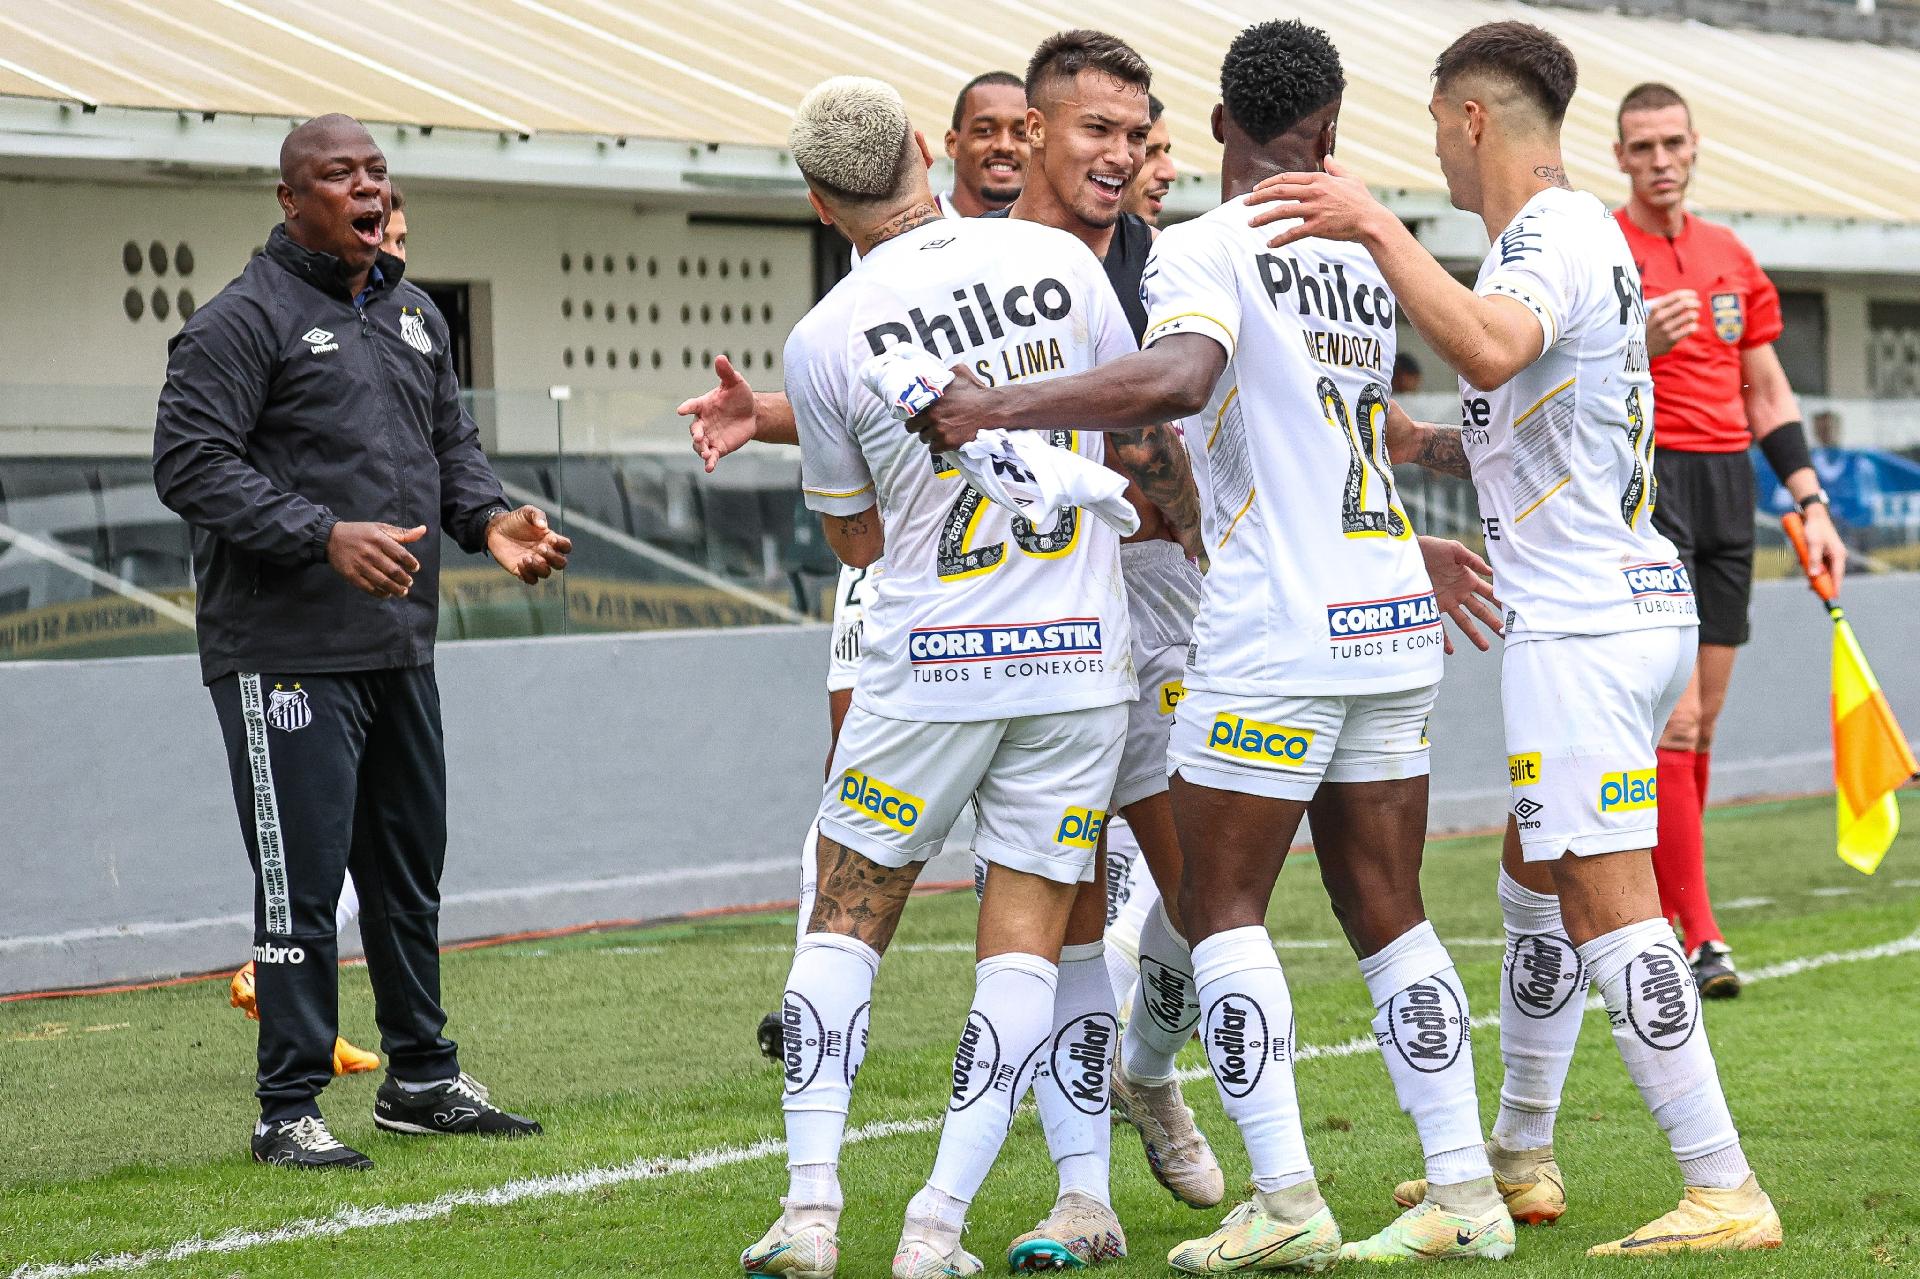 Em jogo de sete gols, Santos quebra jejum e vence o Goiás na Vila